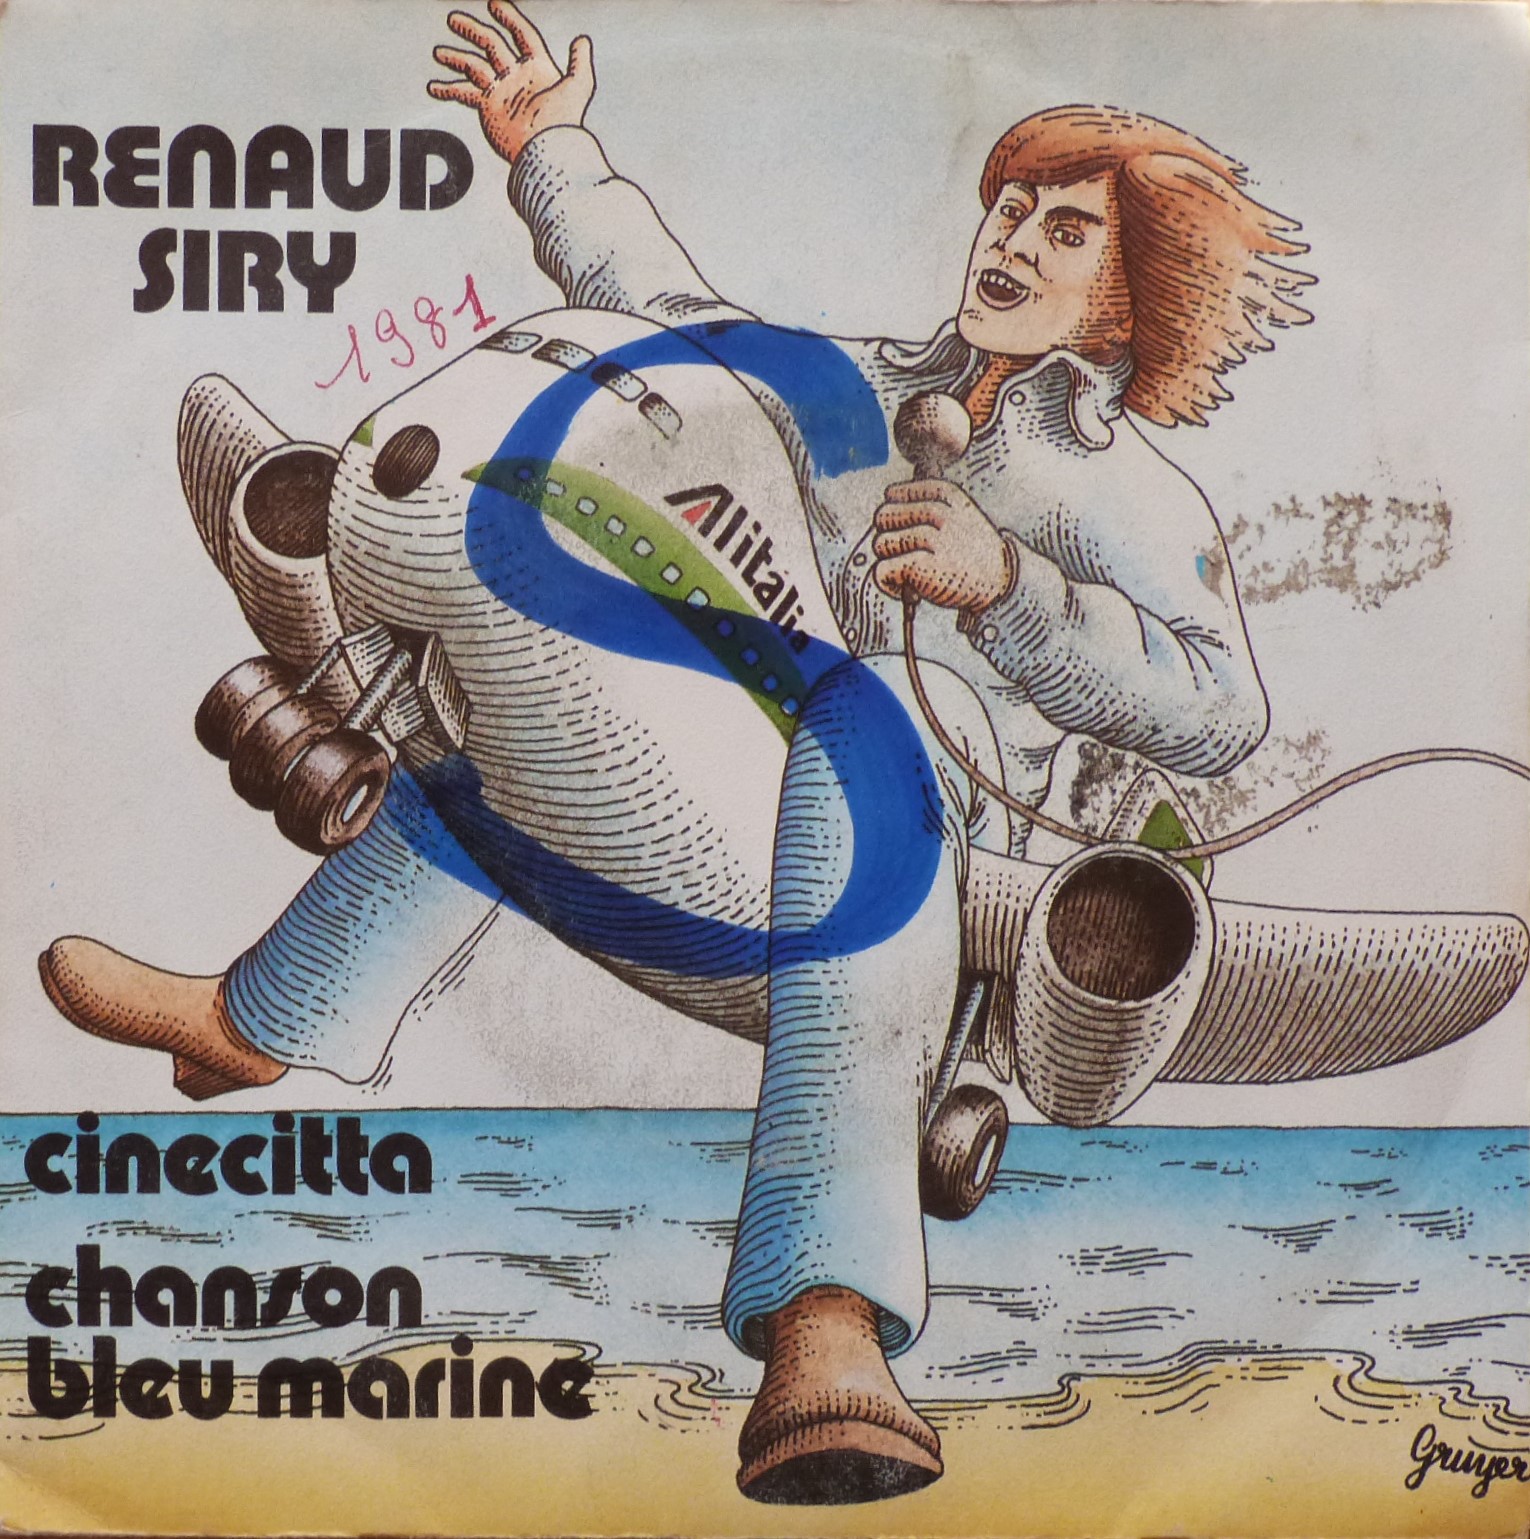 Renaud Siry, Cinecitta